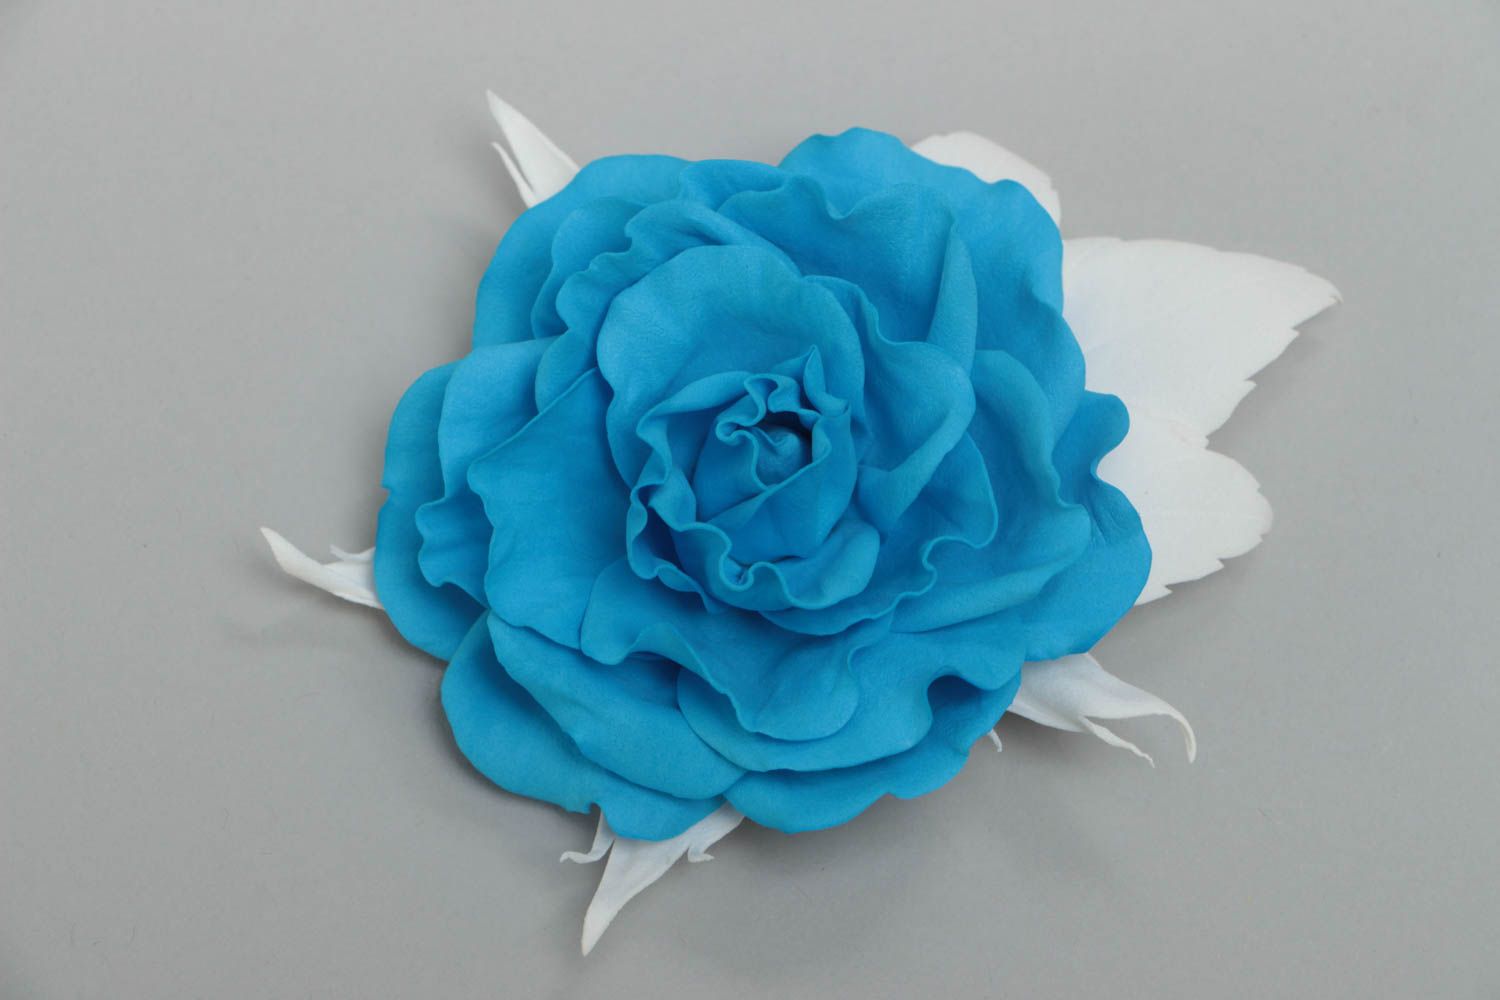 Брошь с цветком из фоамирана роза голубая с белым красивая крупная ручной работы фото 2